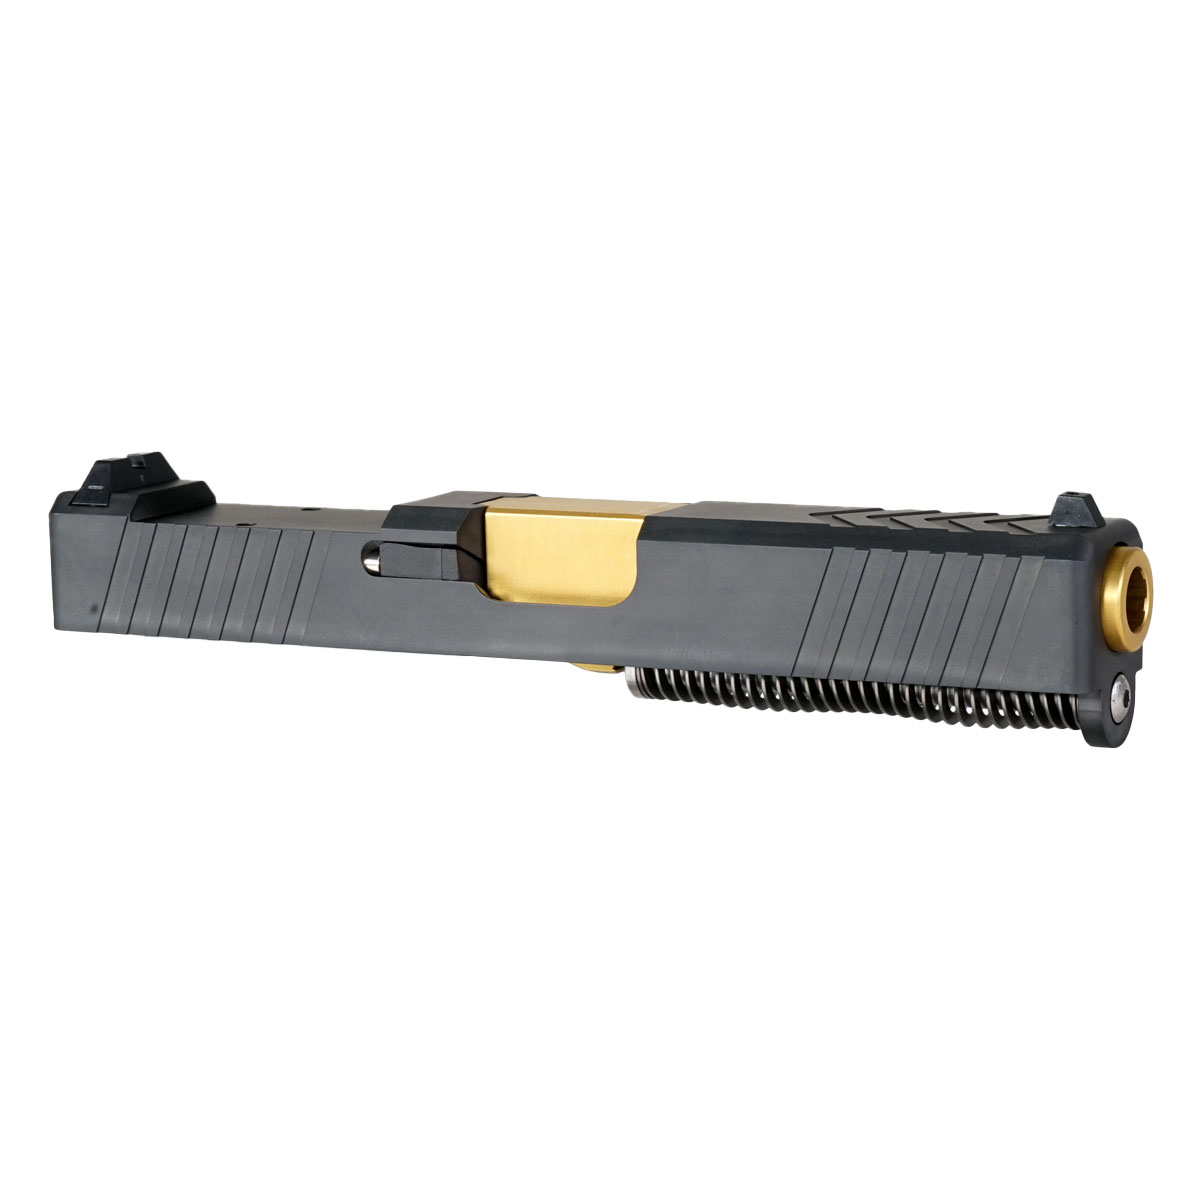 DTT 'Swindler's Chest' 9mm Complete Slide Kit - Glock 19 Gen 1-3 Compatible